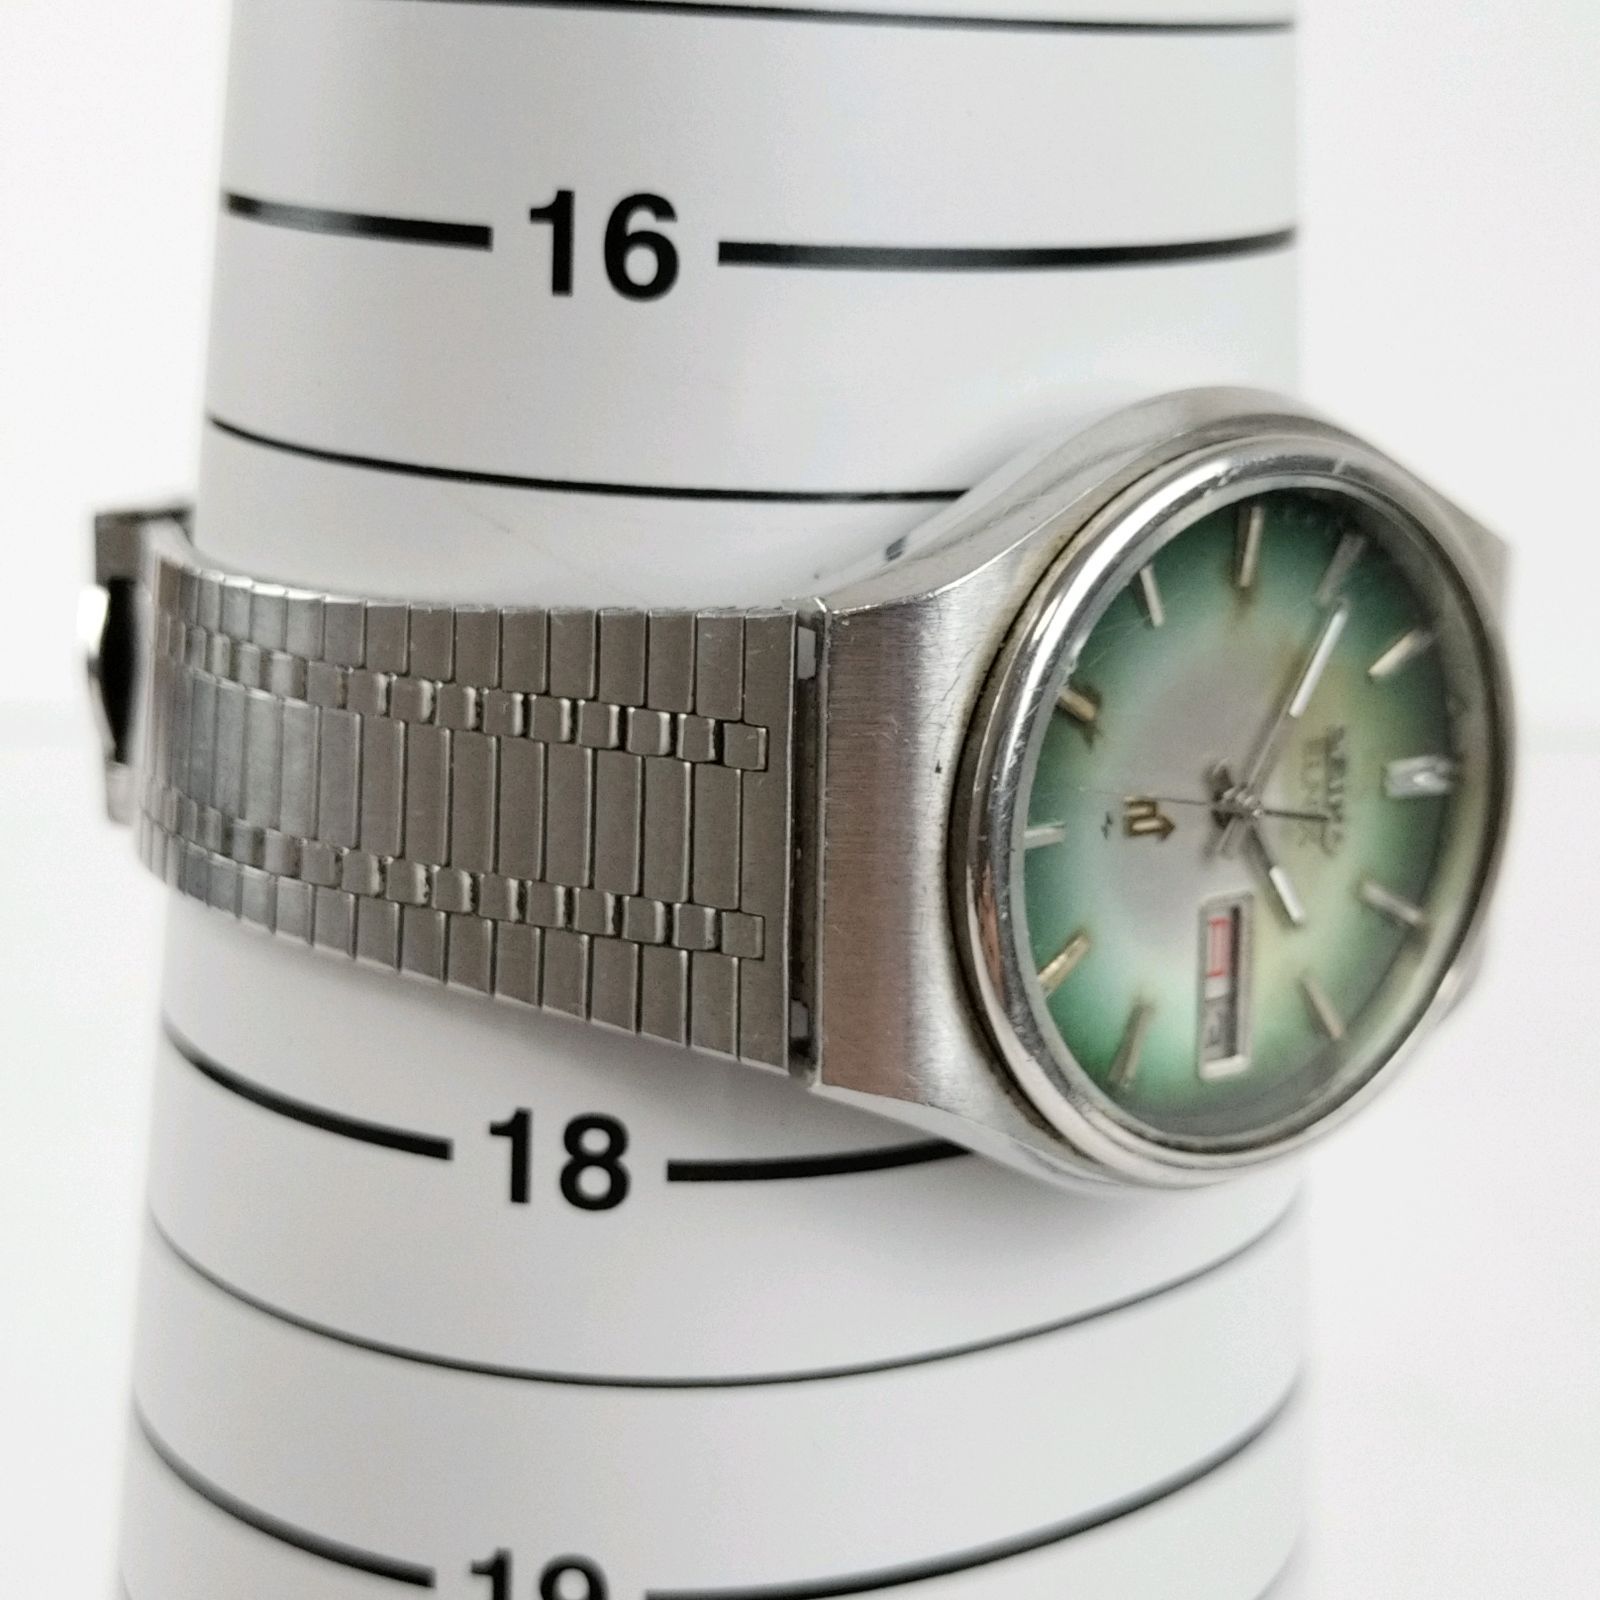 【お買い得】SEIKO 腕時計 ELNIX デイデイト 0703-1010